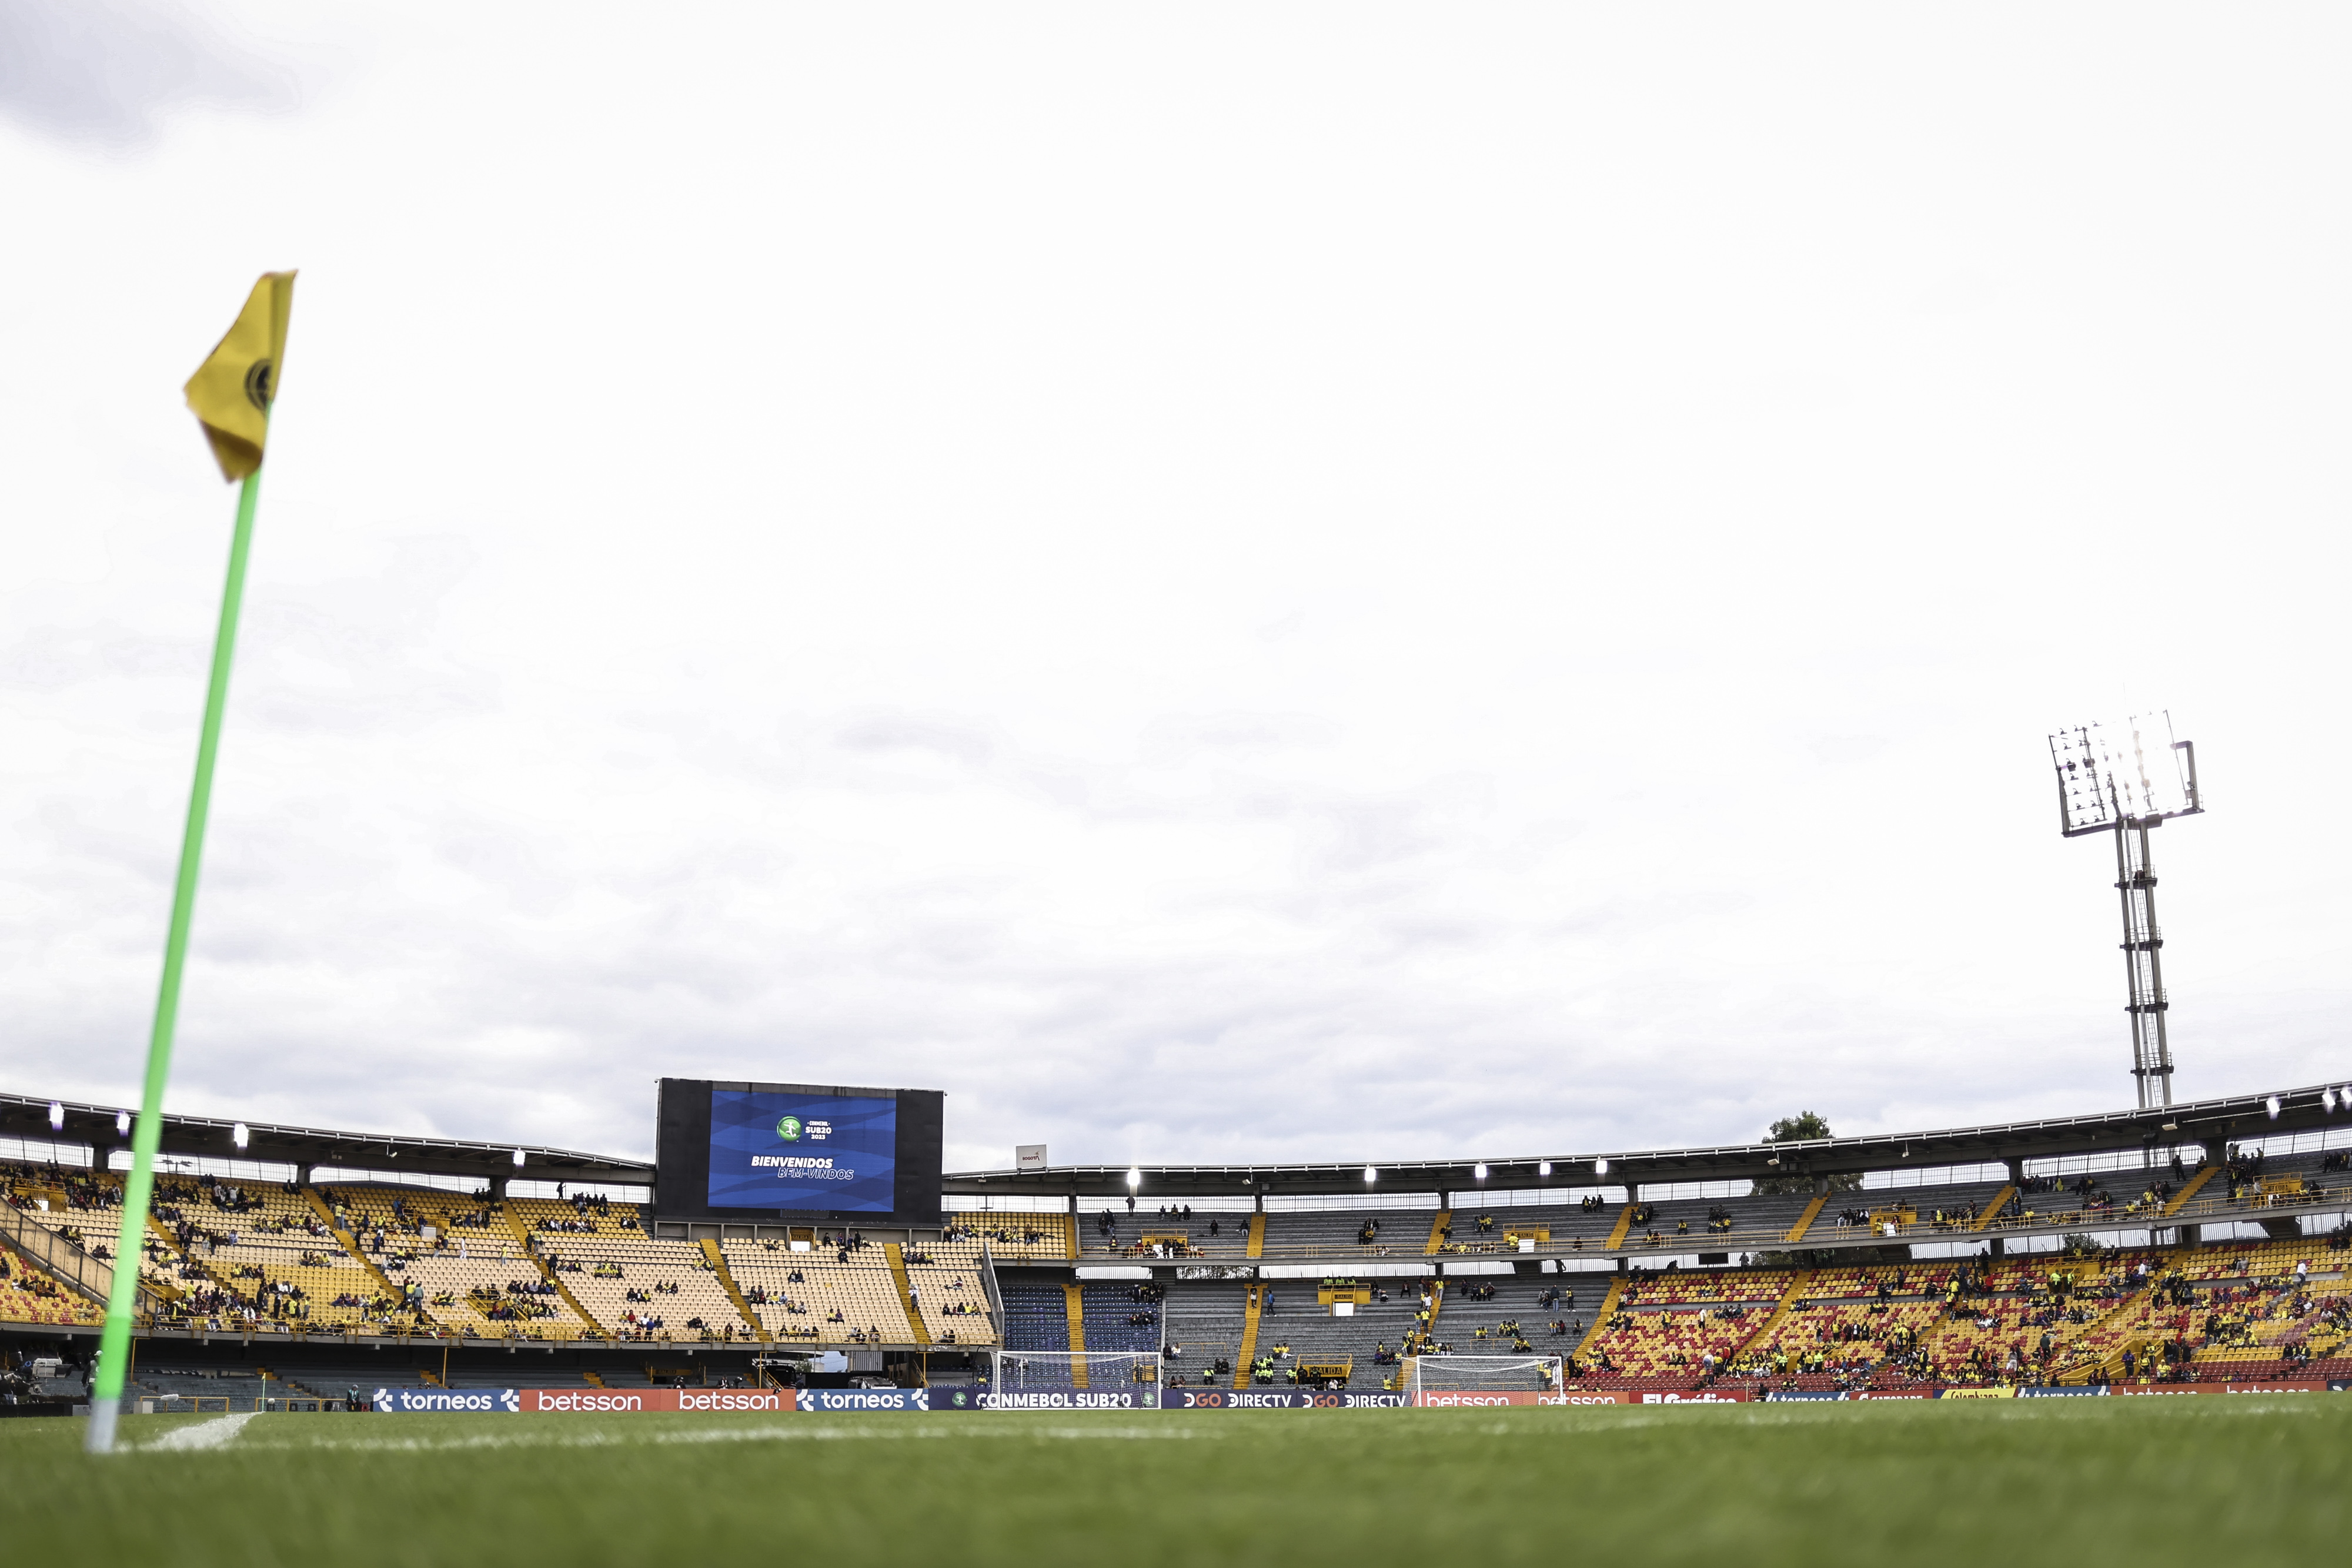 El estadio Nemesio Camacho El Campin tiene una capacidad de 39.000 asistentes.

(Conmebol)